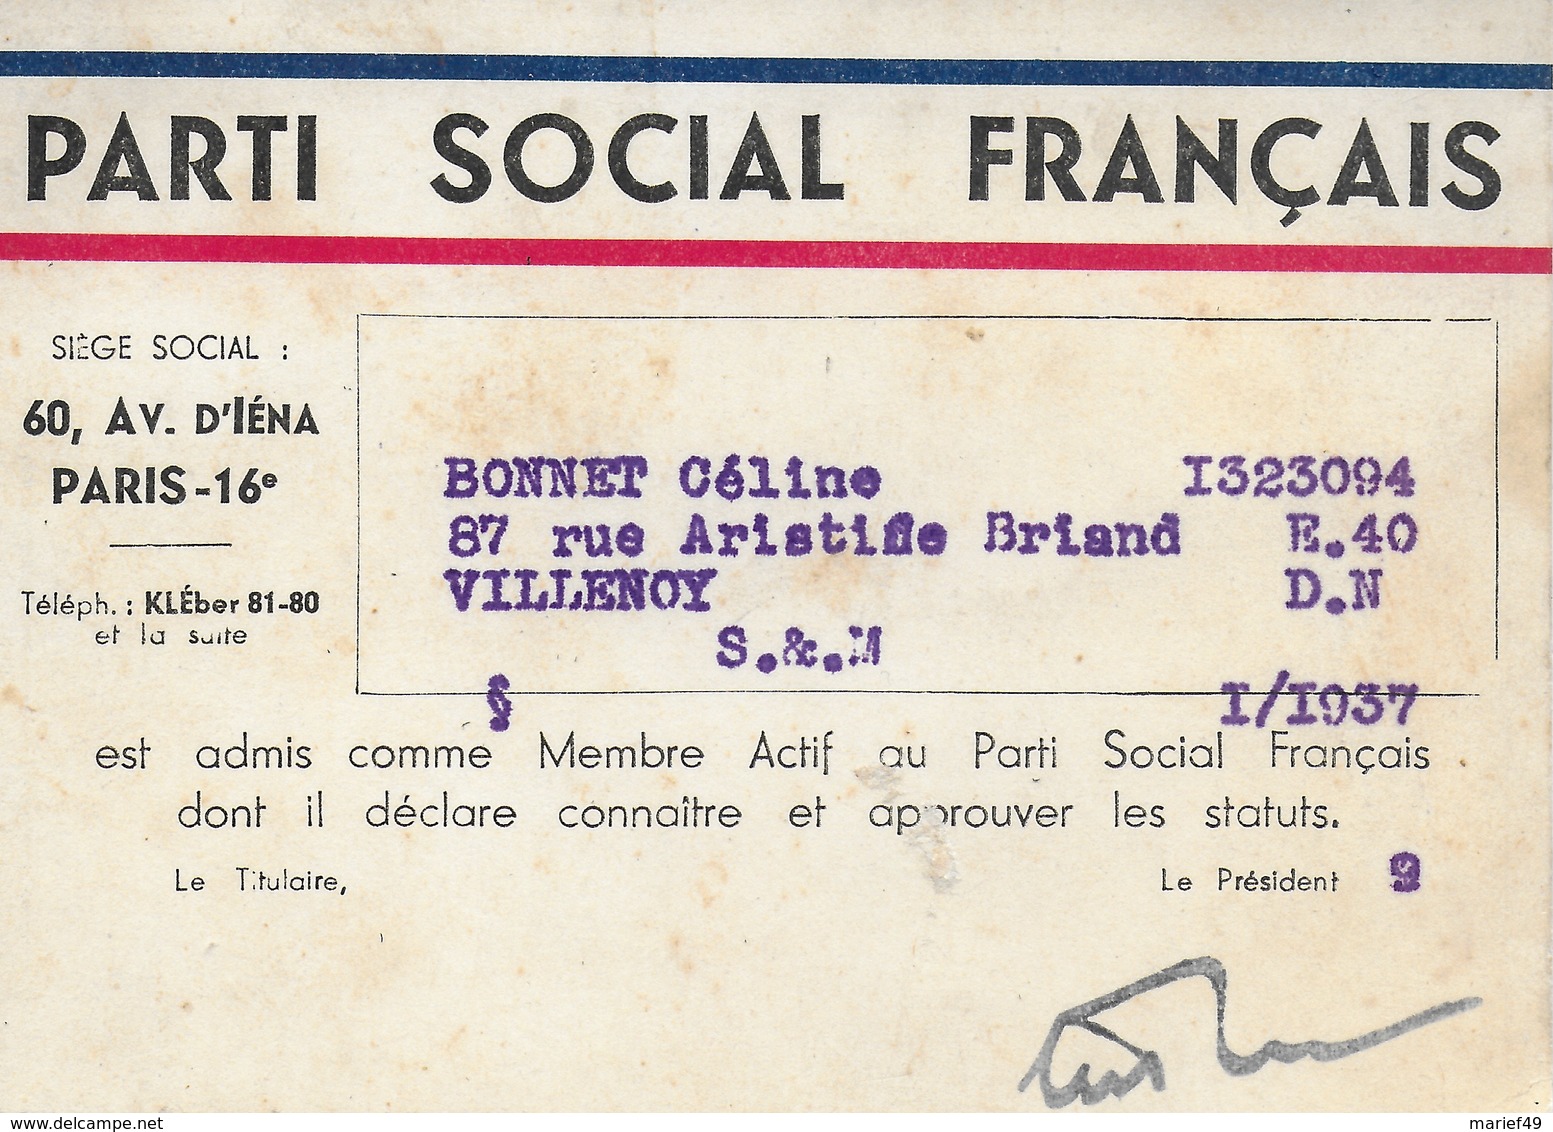 CARTE ADHERENT PARTI SOCIAL FRANCAIS 1937 - Documents Historiques